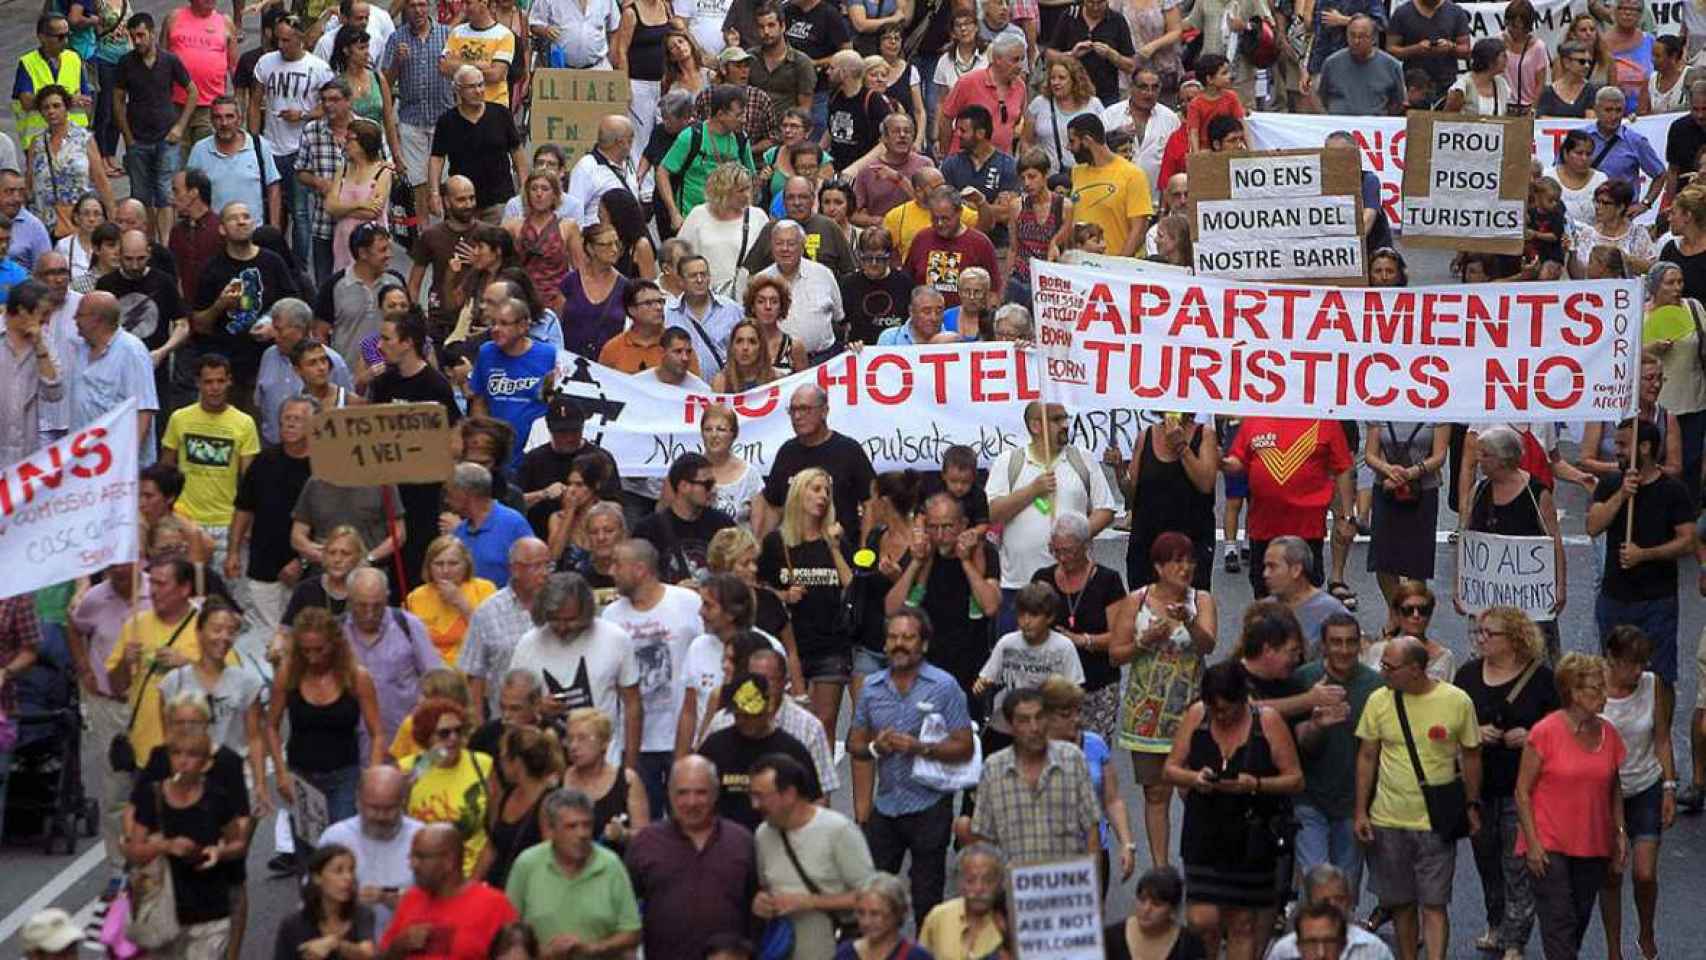 Los barceloneses toman las calles para protestar contra los apartamentos turísticos